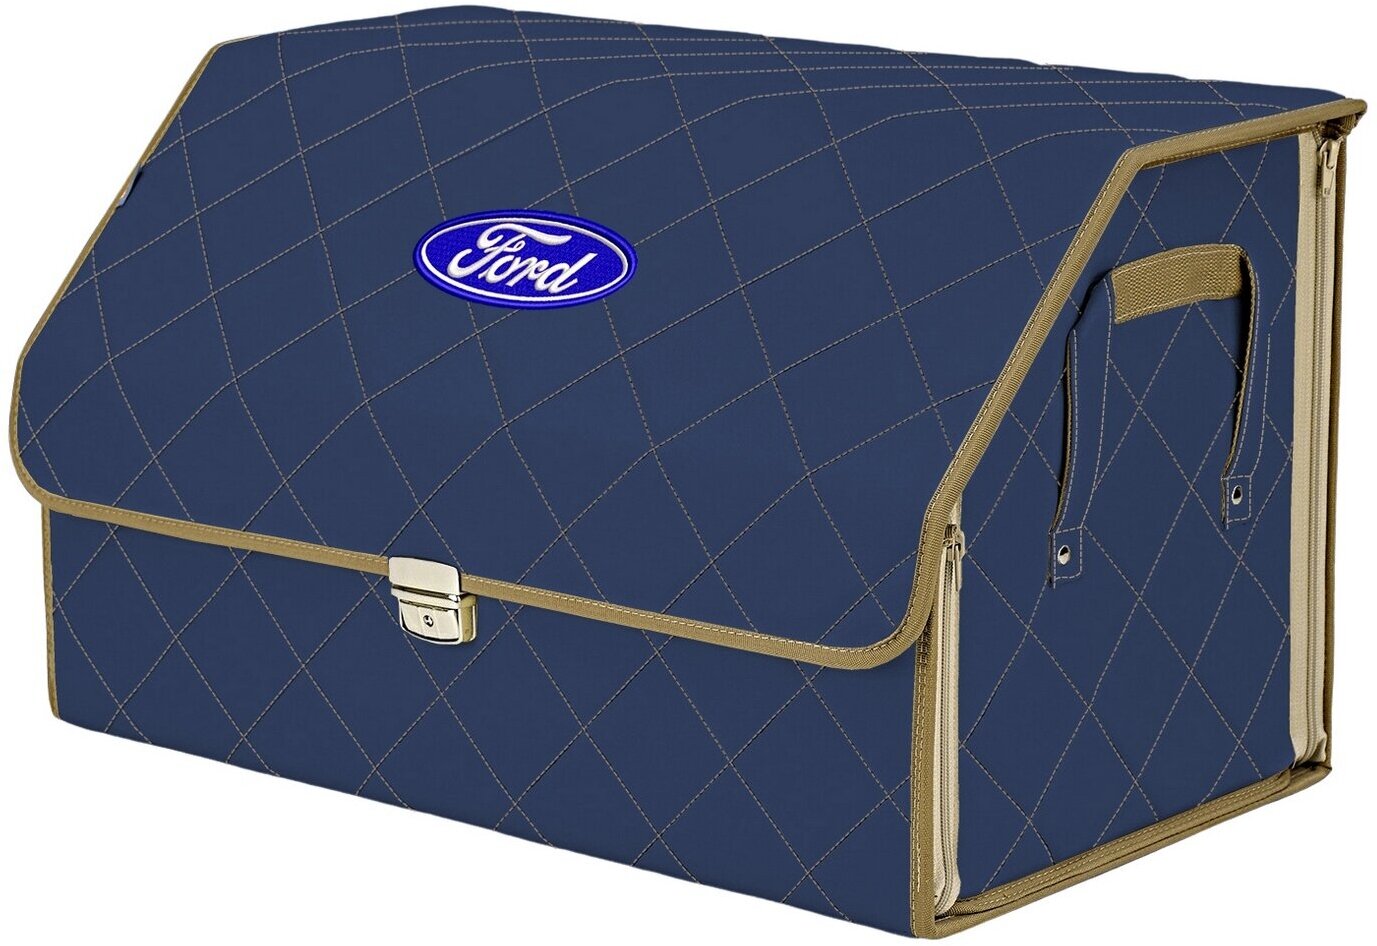 Органайзер-саквояж в багажник "Союз Премиум" (размер XL). Цвет: синий с бежевой прострочкой Ромб и вышивкой Ford (Форд).